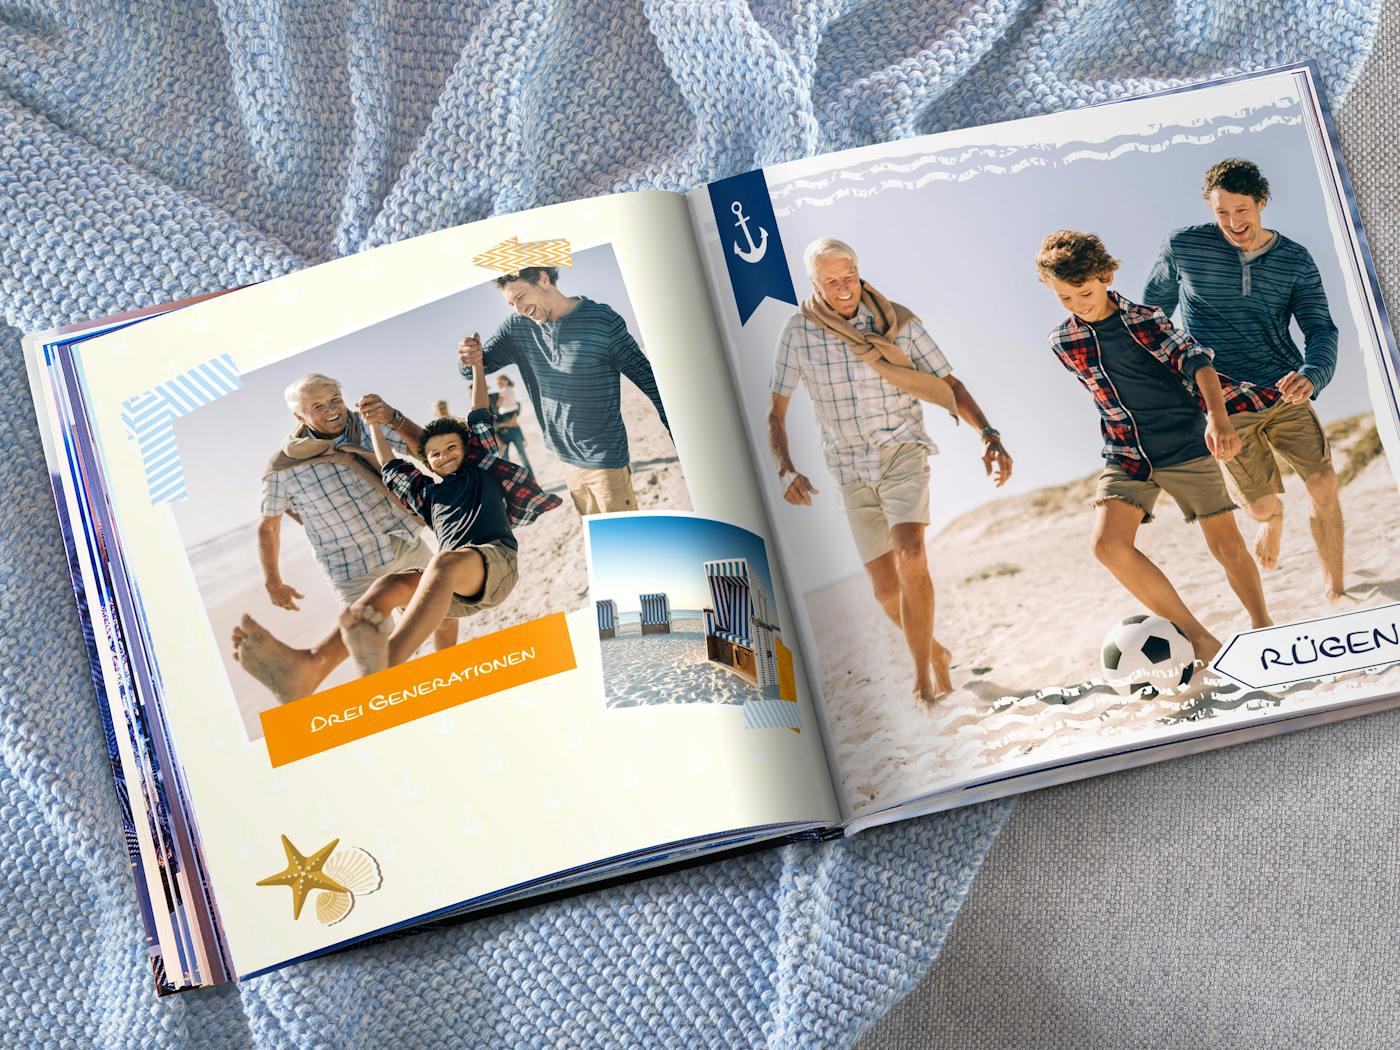 Fotobuch vom Urlaub gestalten - so einfach geht's